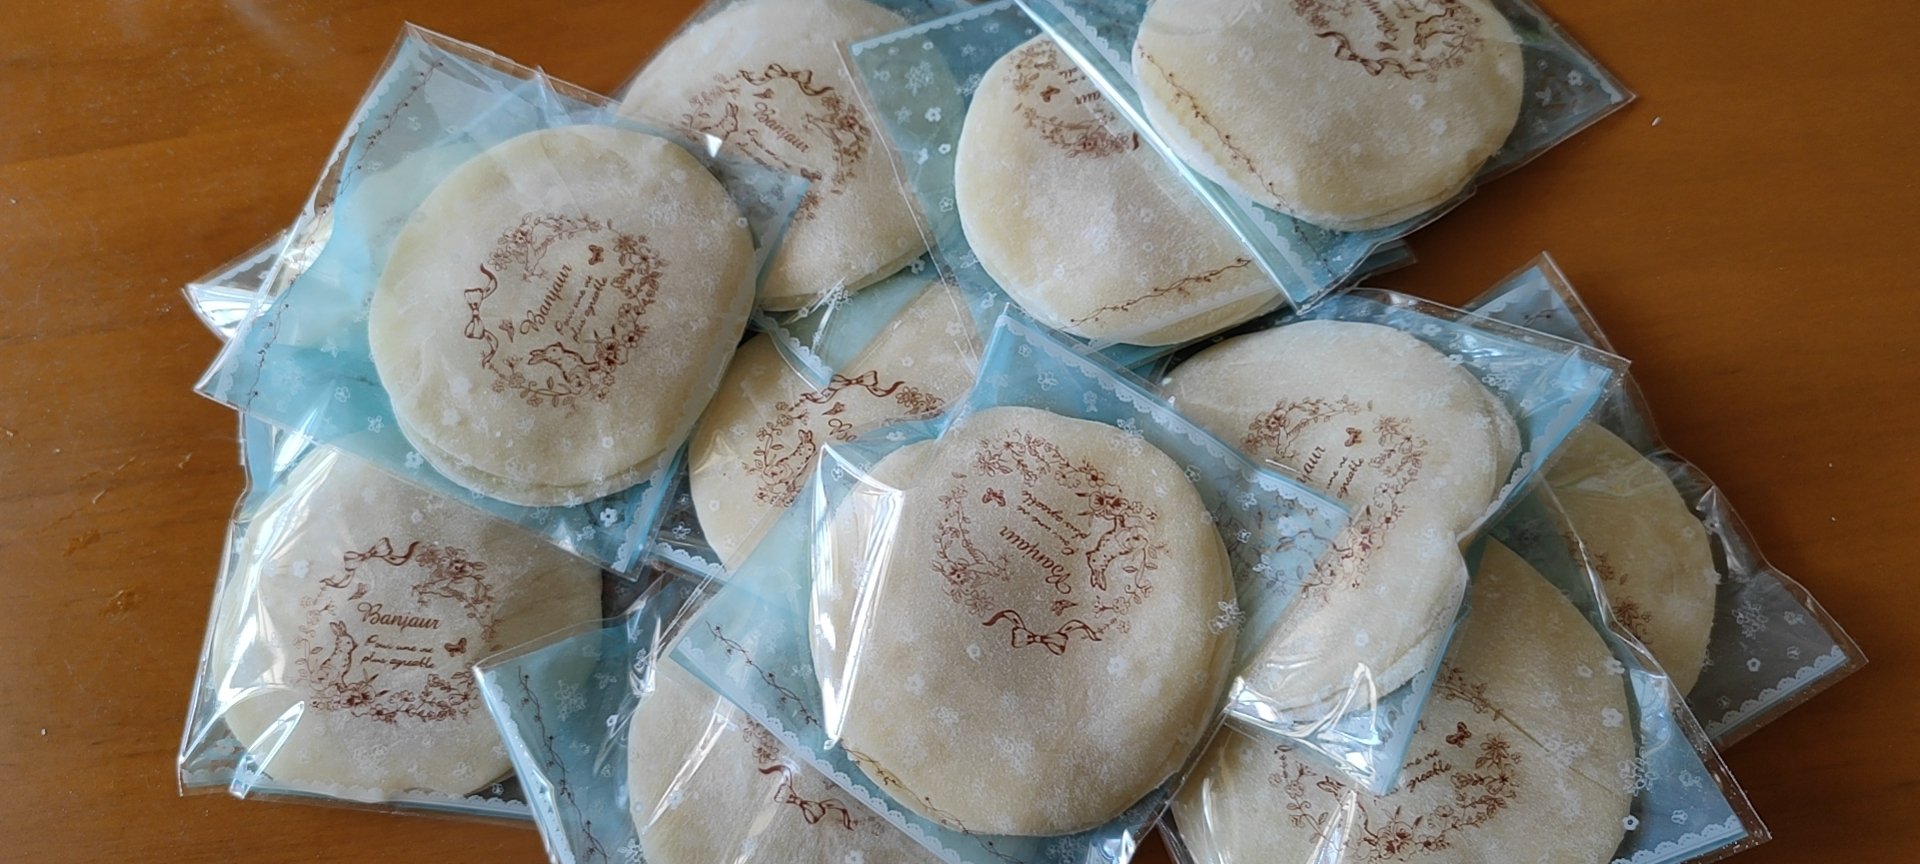 燕麦雪饼（燕麦雪糍）～朋友圈热卖了几年的东莞网红小食